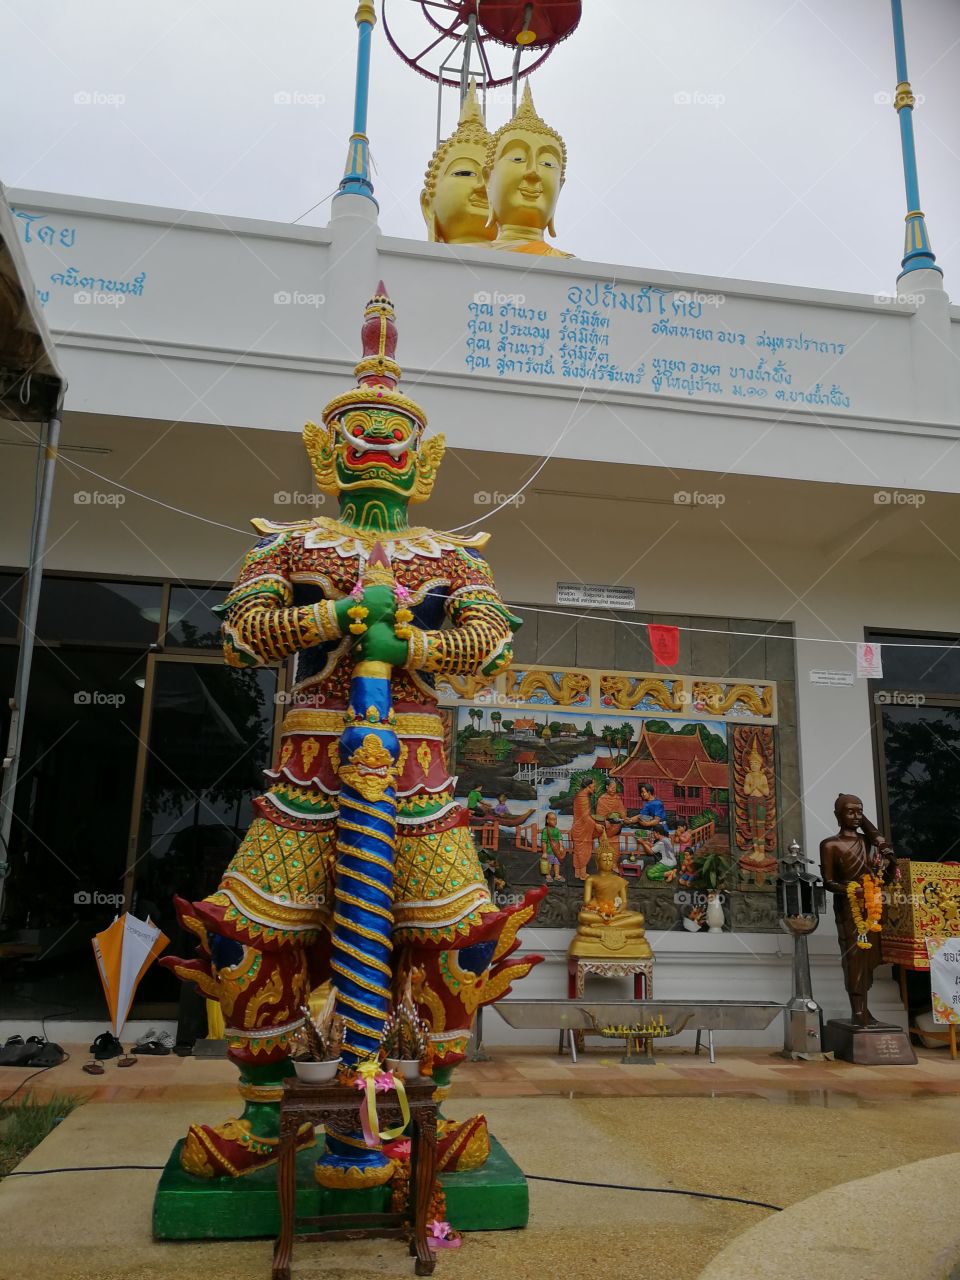 Sculpture, Temple, Religion, Festival, Carnival